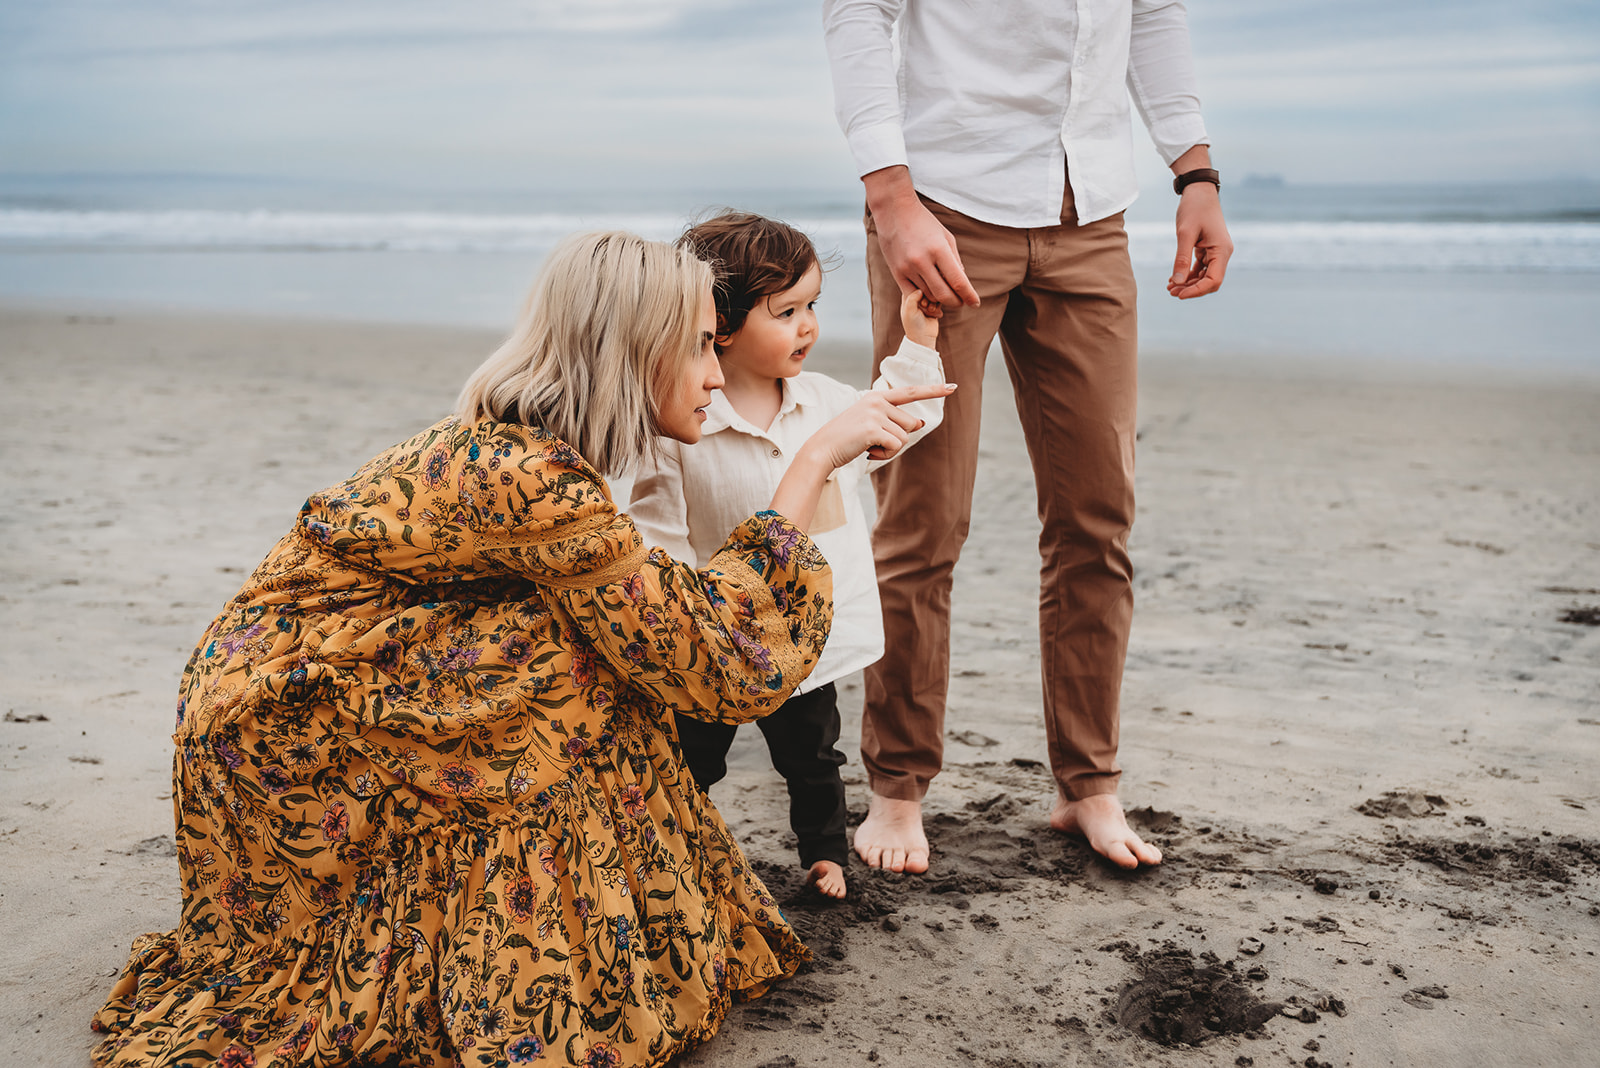 Family Photo Session on Coronado Beach | San Diego